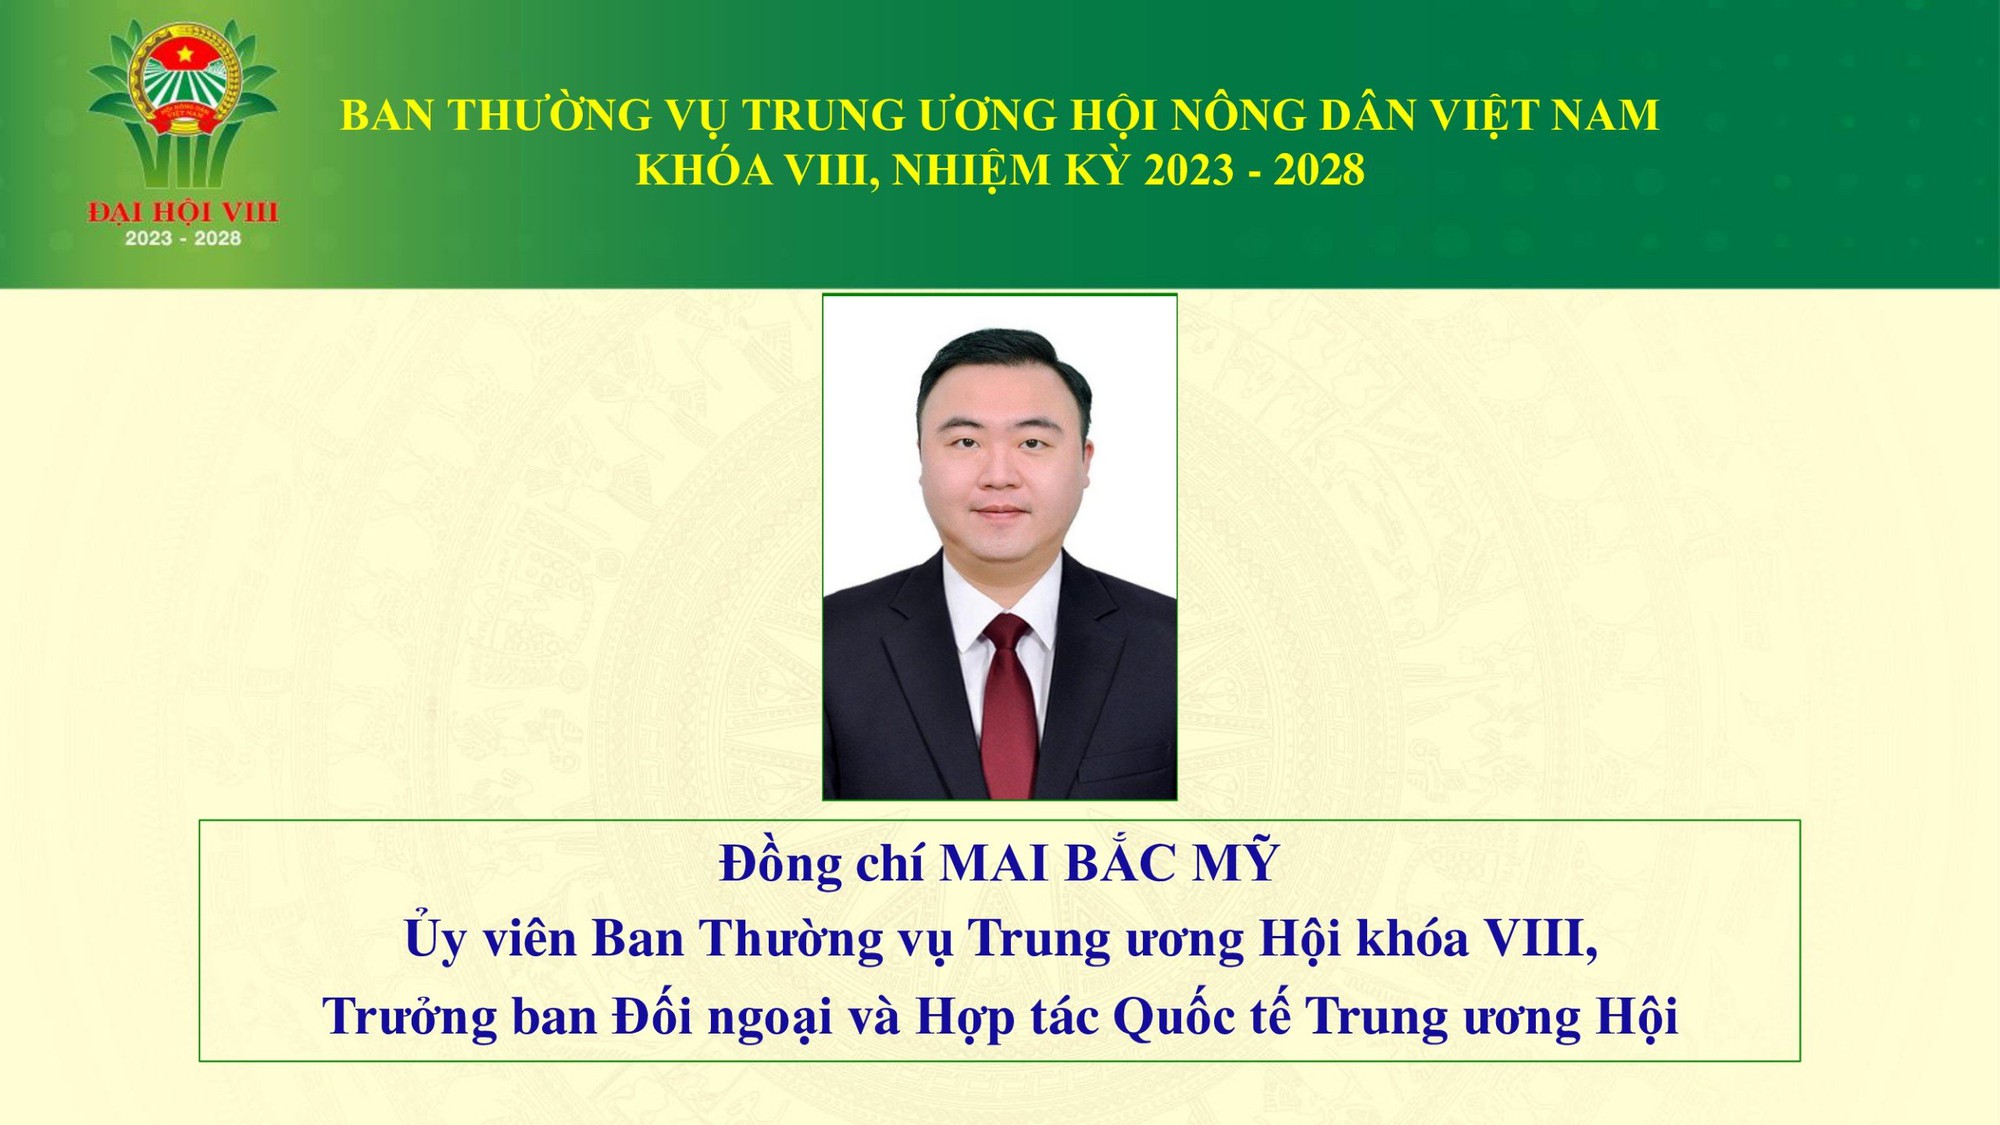 Danh sách 18 đồng chí tham gia Ban Thường vụ Trung ương Hội Nông dân Việt Nam khoá VIII - Ảnh 11.